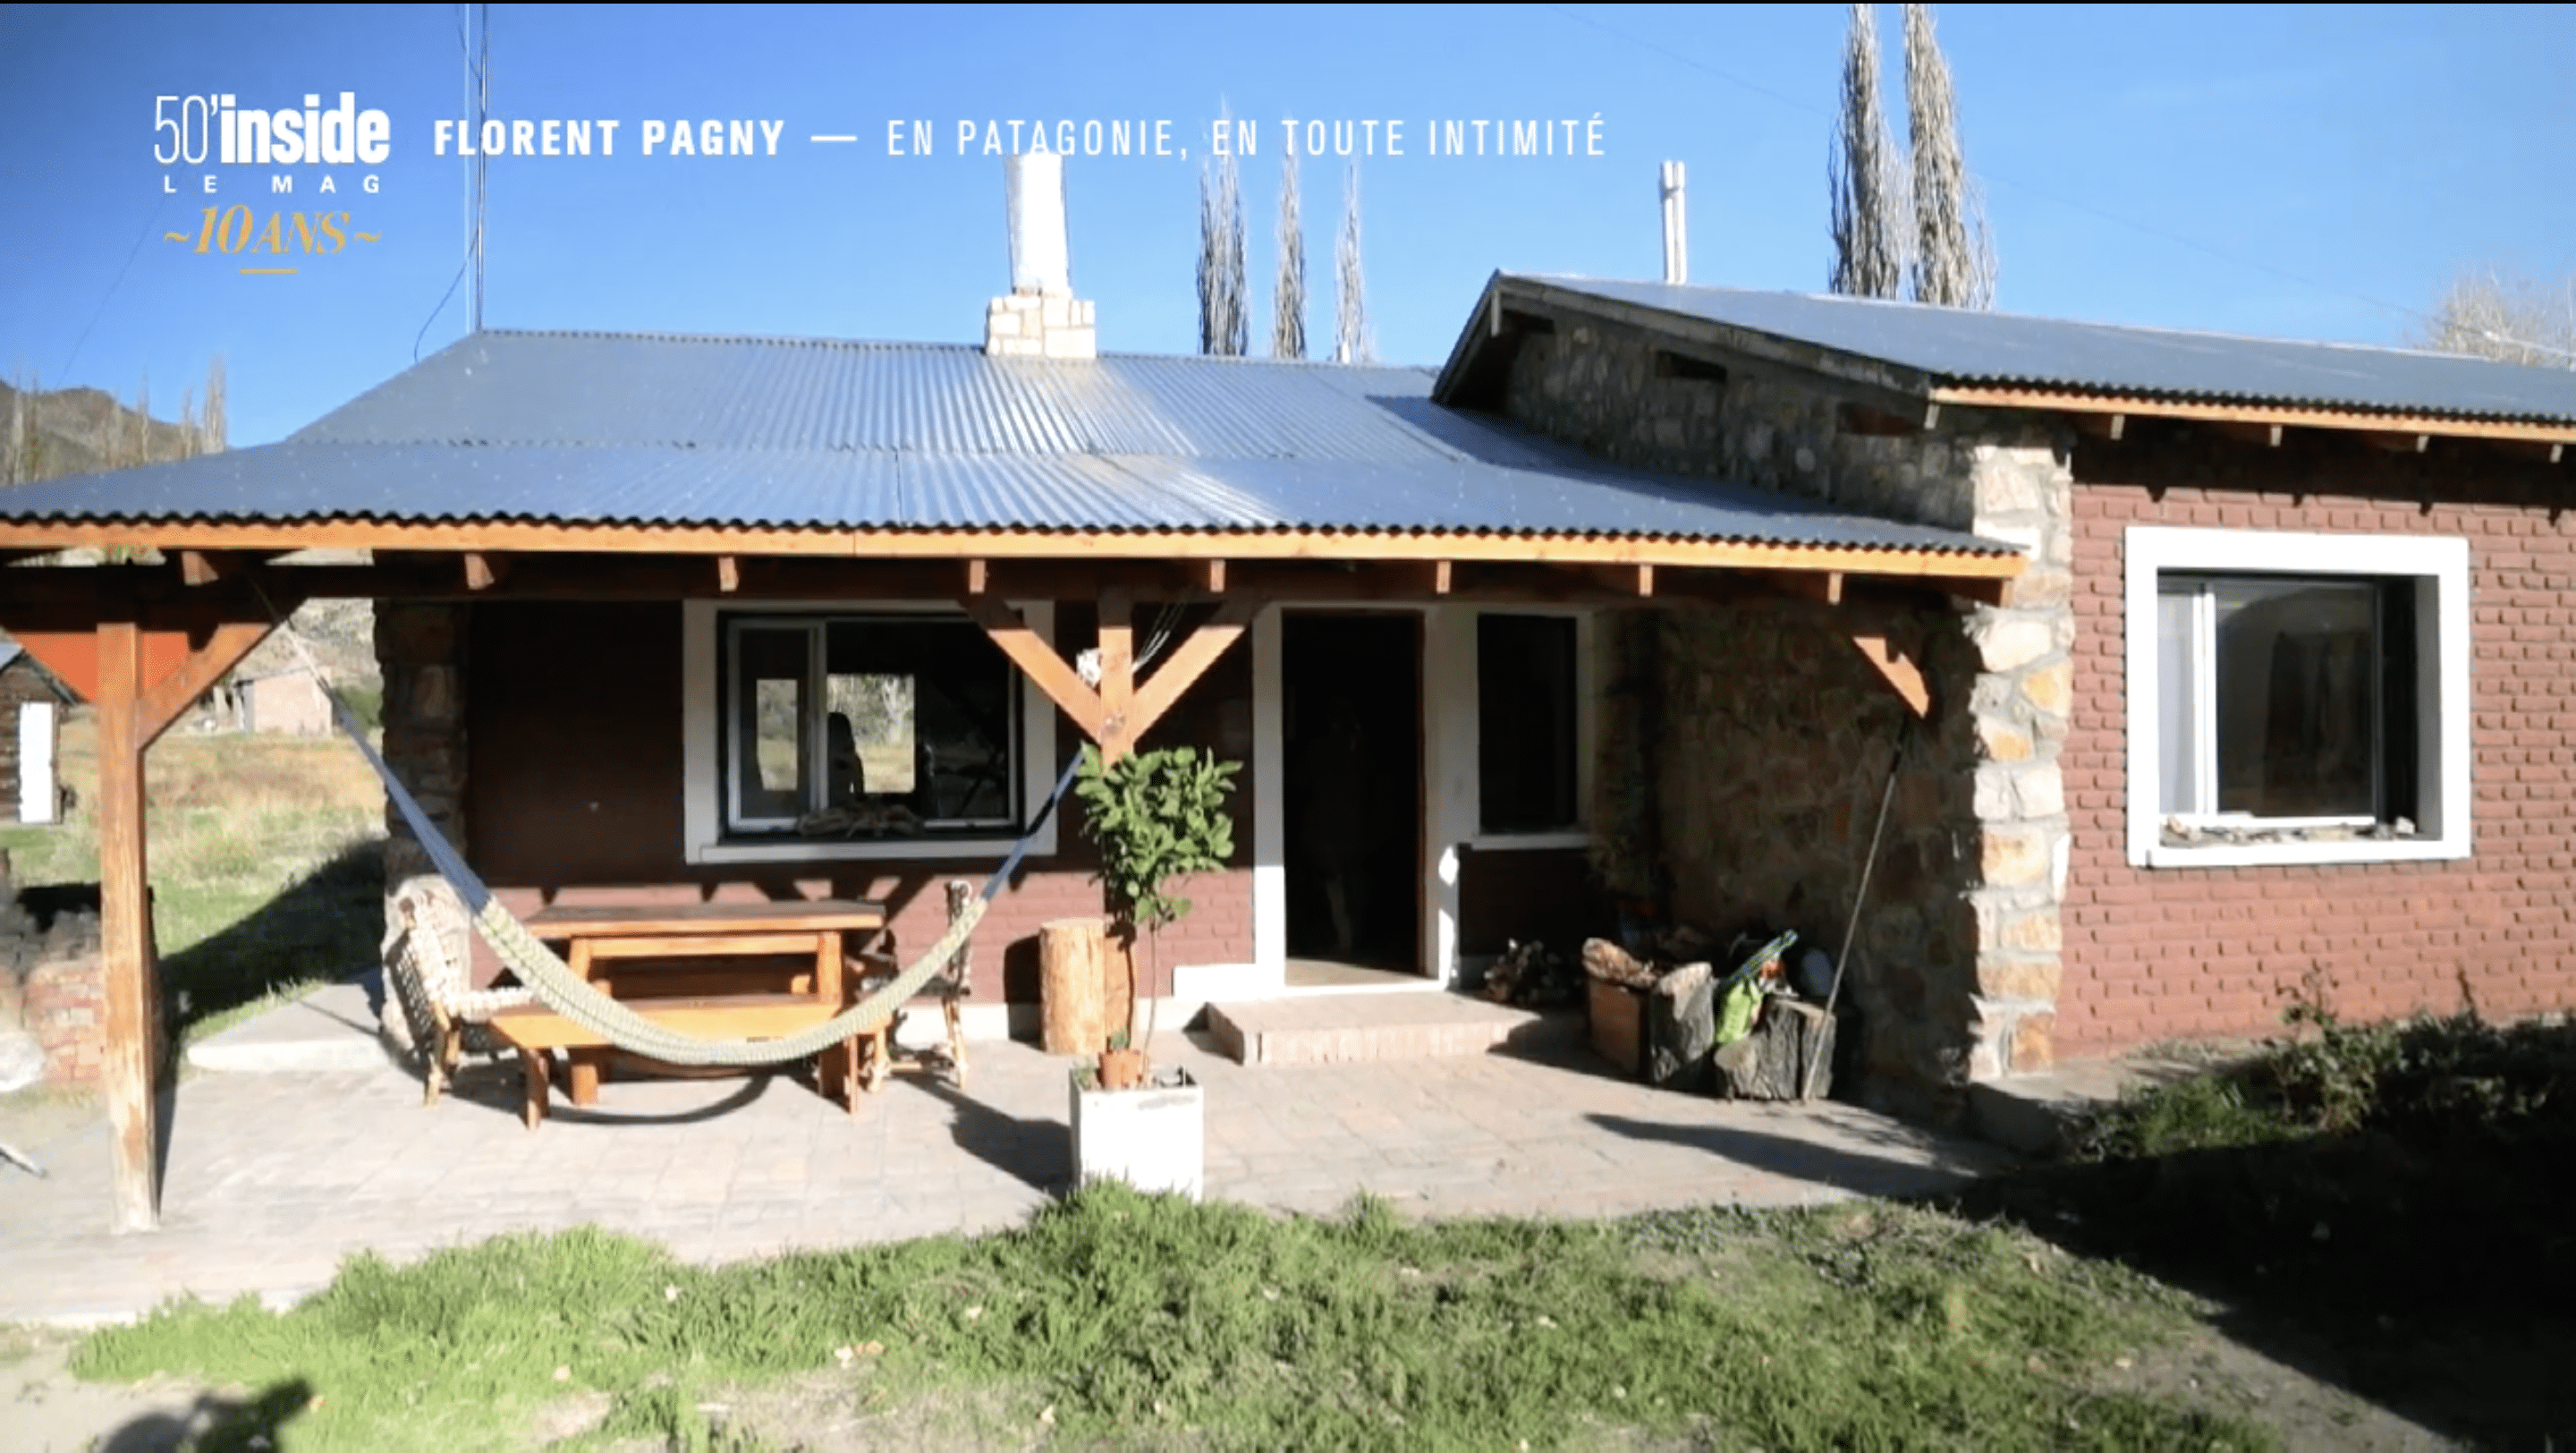 La maison de Florent Pagny en Patagonie. ǀ Source : 50' Inside-TF1